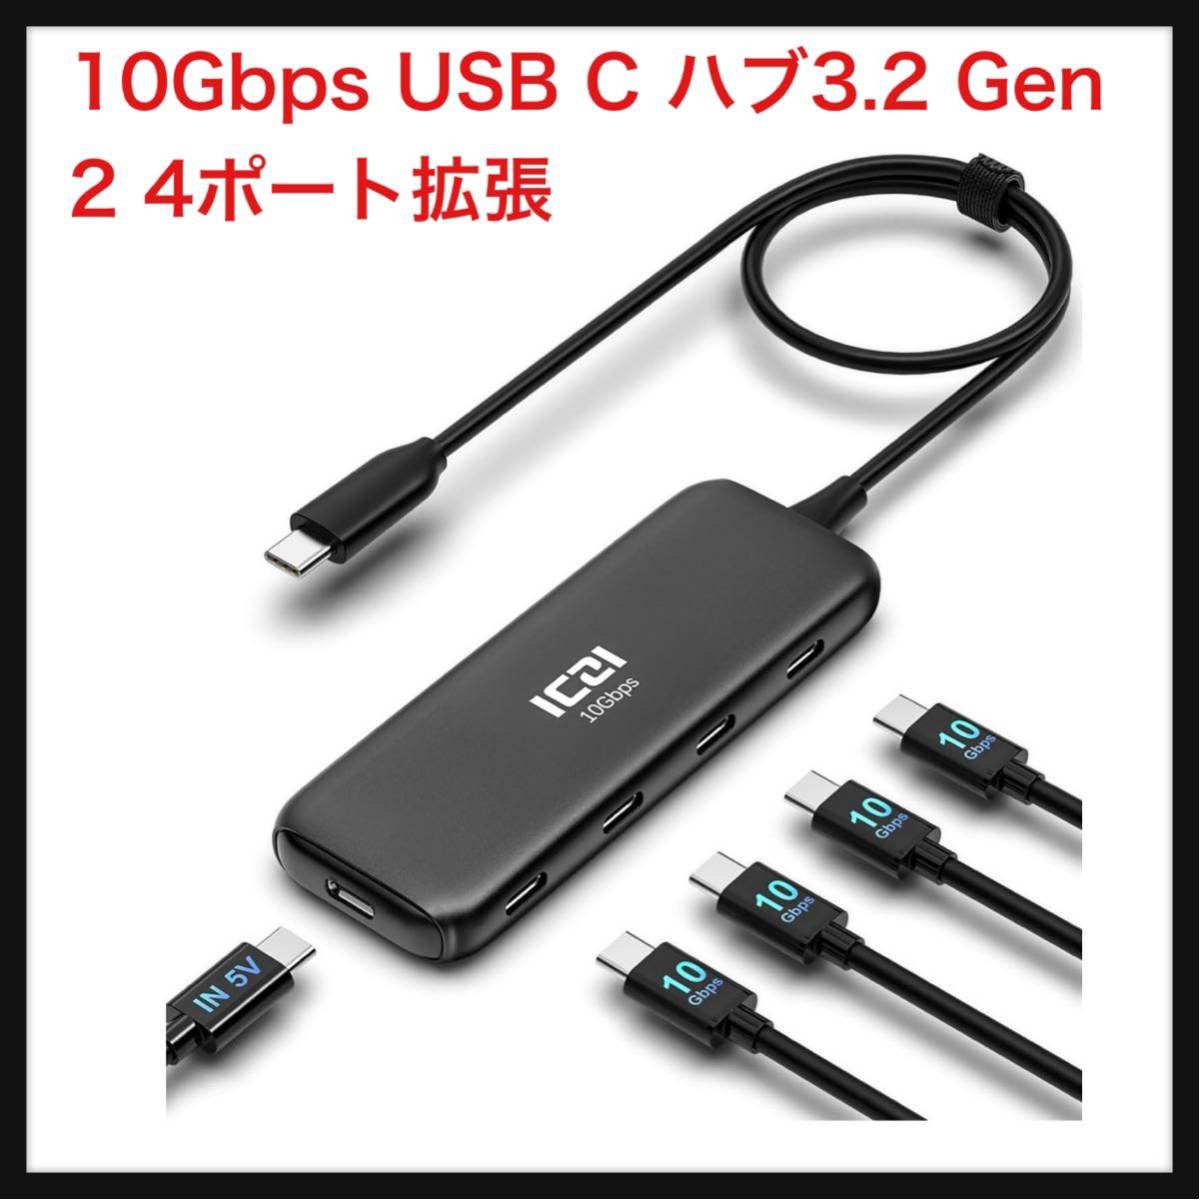 【開封のみ】ICZI★ 10Gbps USB C ハブ3.2 Gen 2 4ポート拡張、ICZI USBC 3.2 to USBC 3.2 変換アダプター 40CMケーブル セルフパワーの画像1